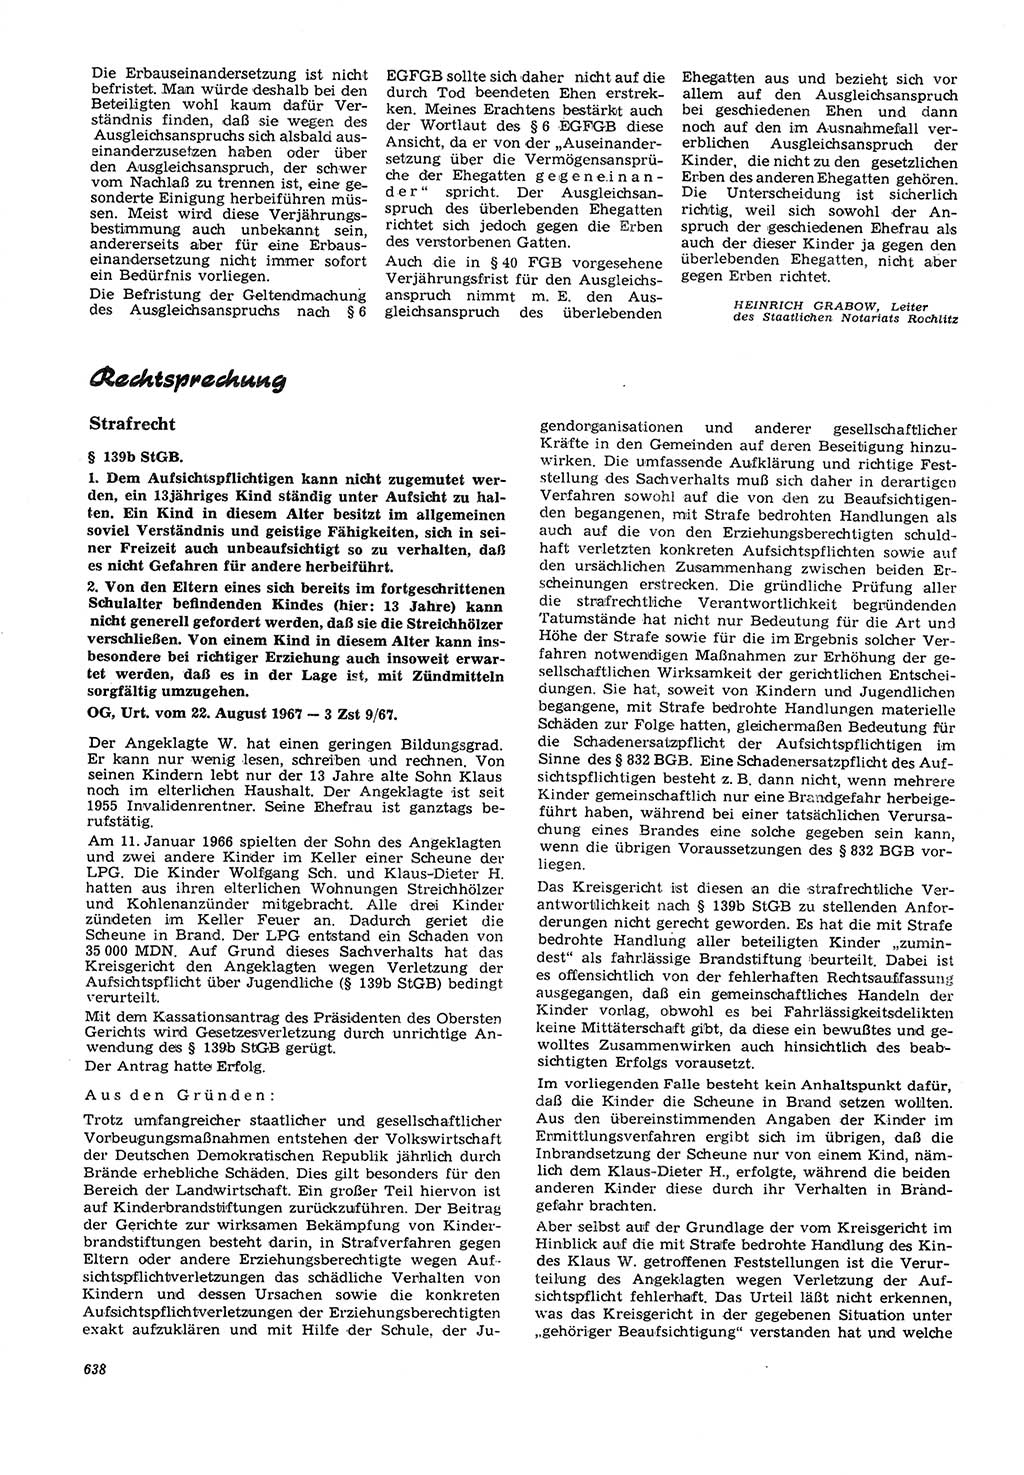 Neue Justiz (NJ), Zeitschrift für Recht und Rechtswissenschaft [Deutsche Demokratische Republik (DDR)], 21. Jahrgang 1967, Seite 638 (NJ DDR 1967, S. 638)